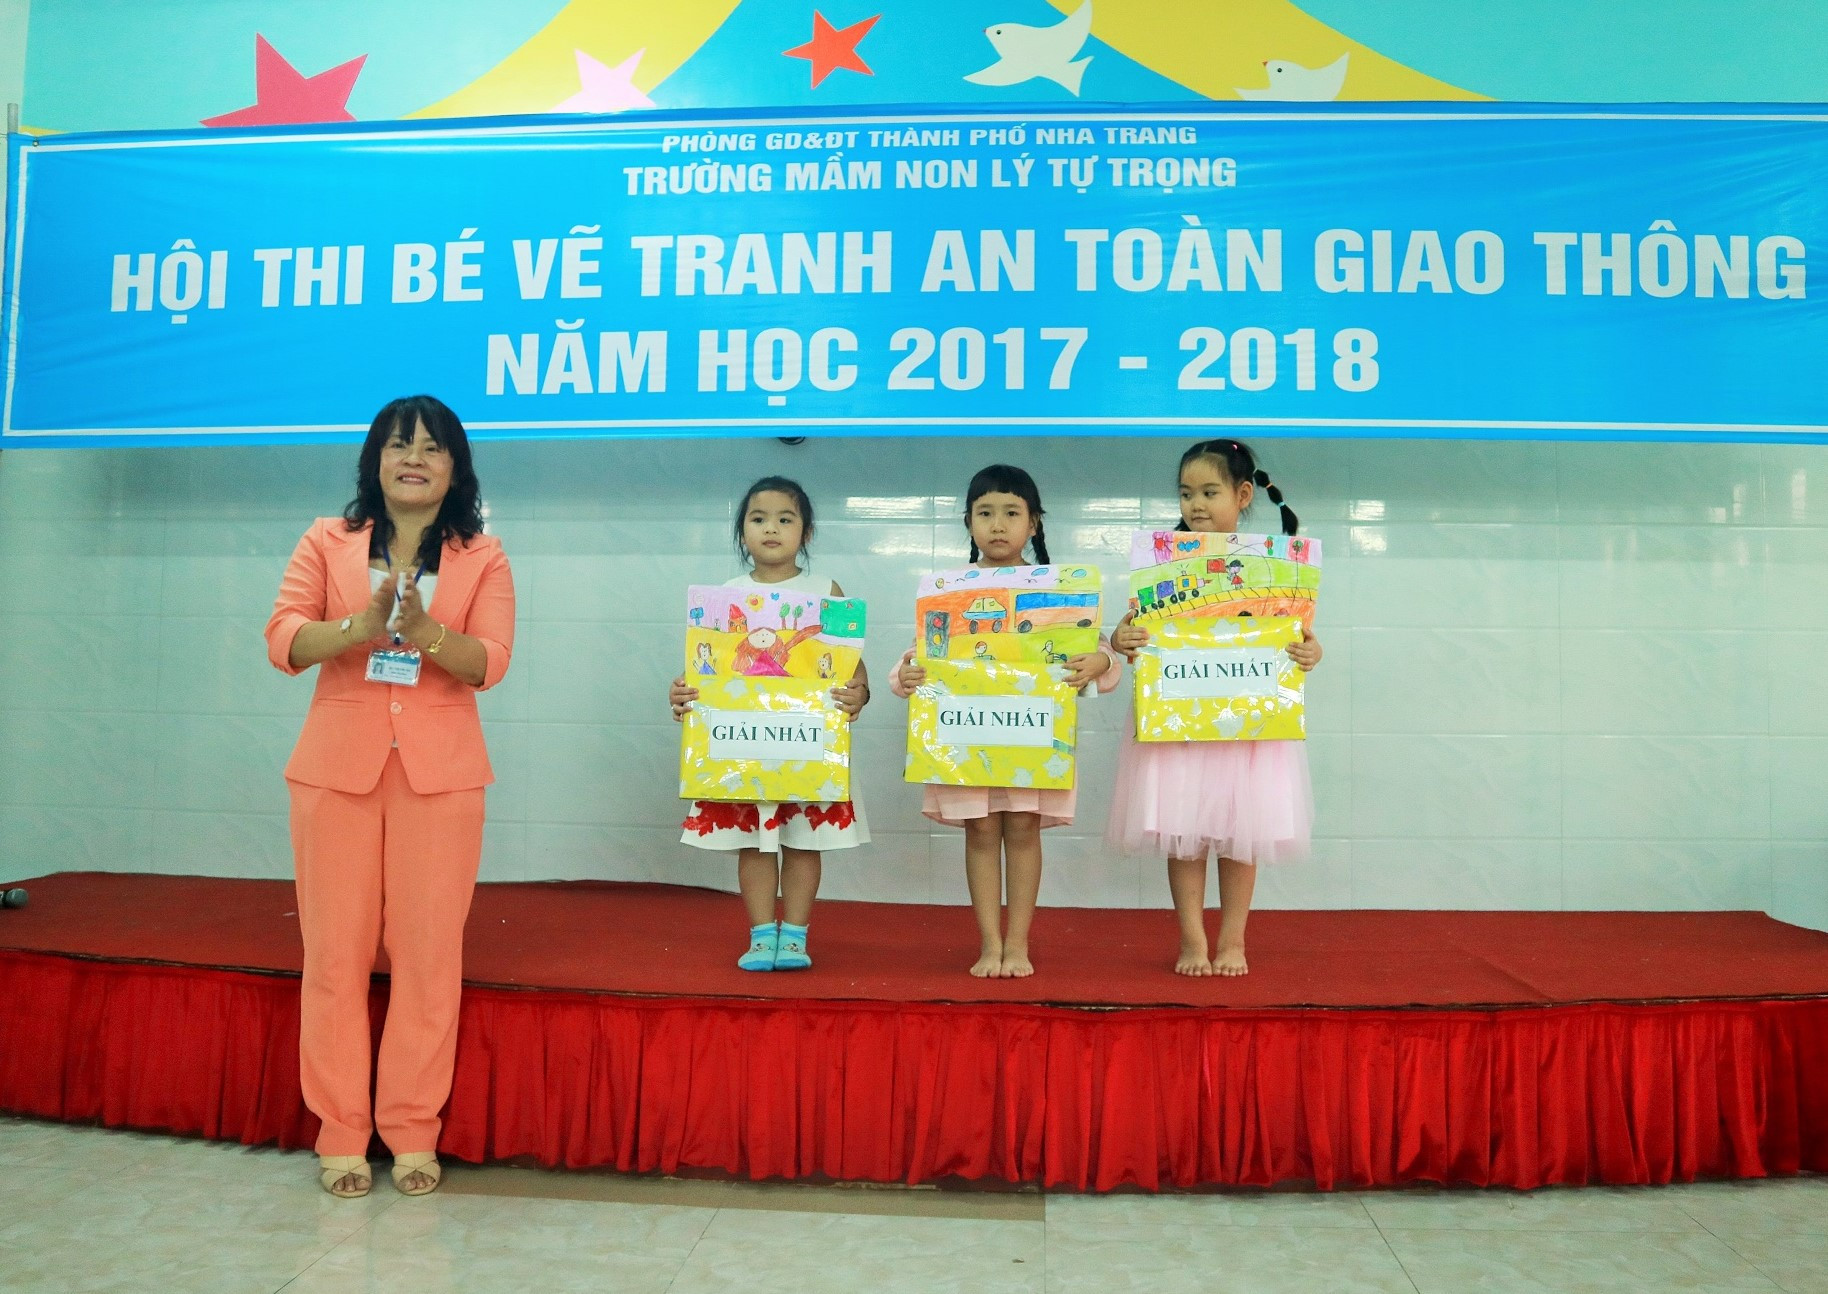 Bà Bùi Thị Thu Hà - Hiệu trưởng nhà trường trao phần thưởng cho các cháu đạt giải